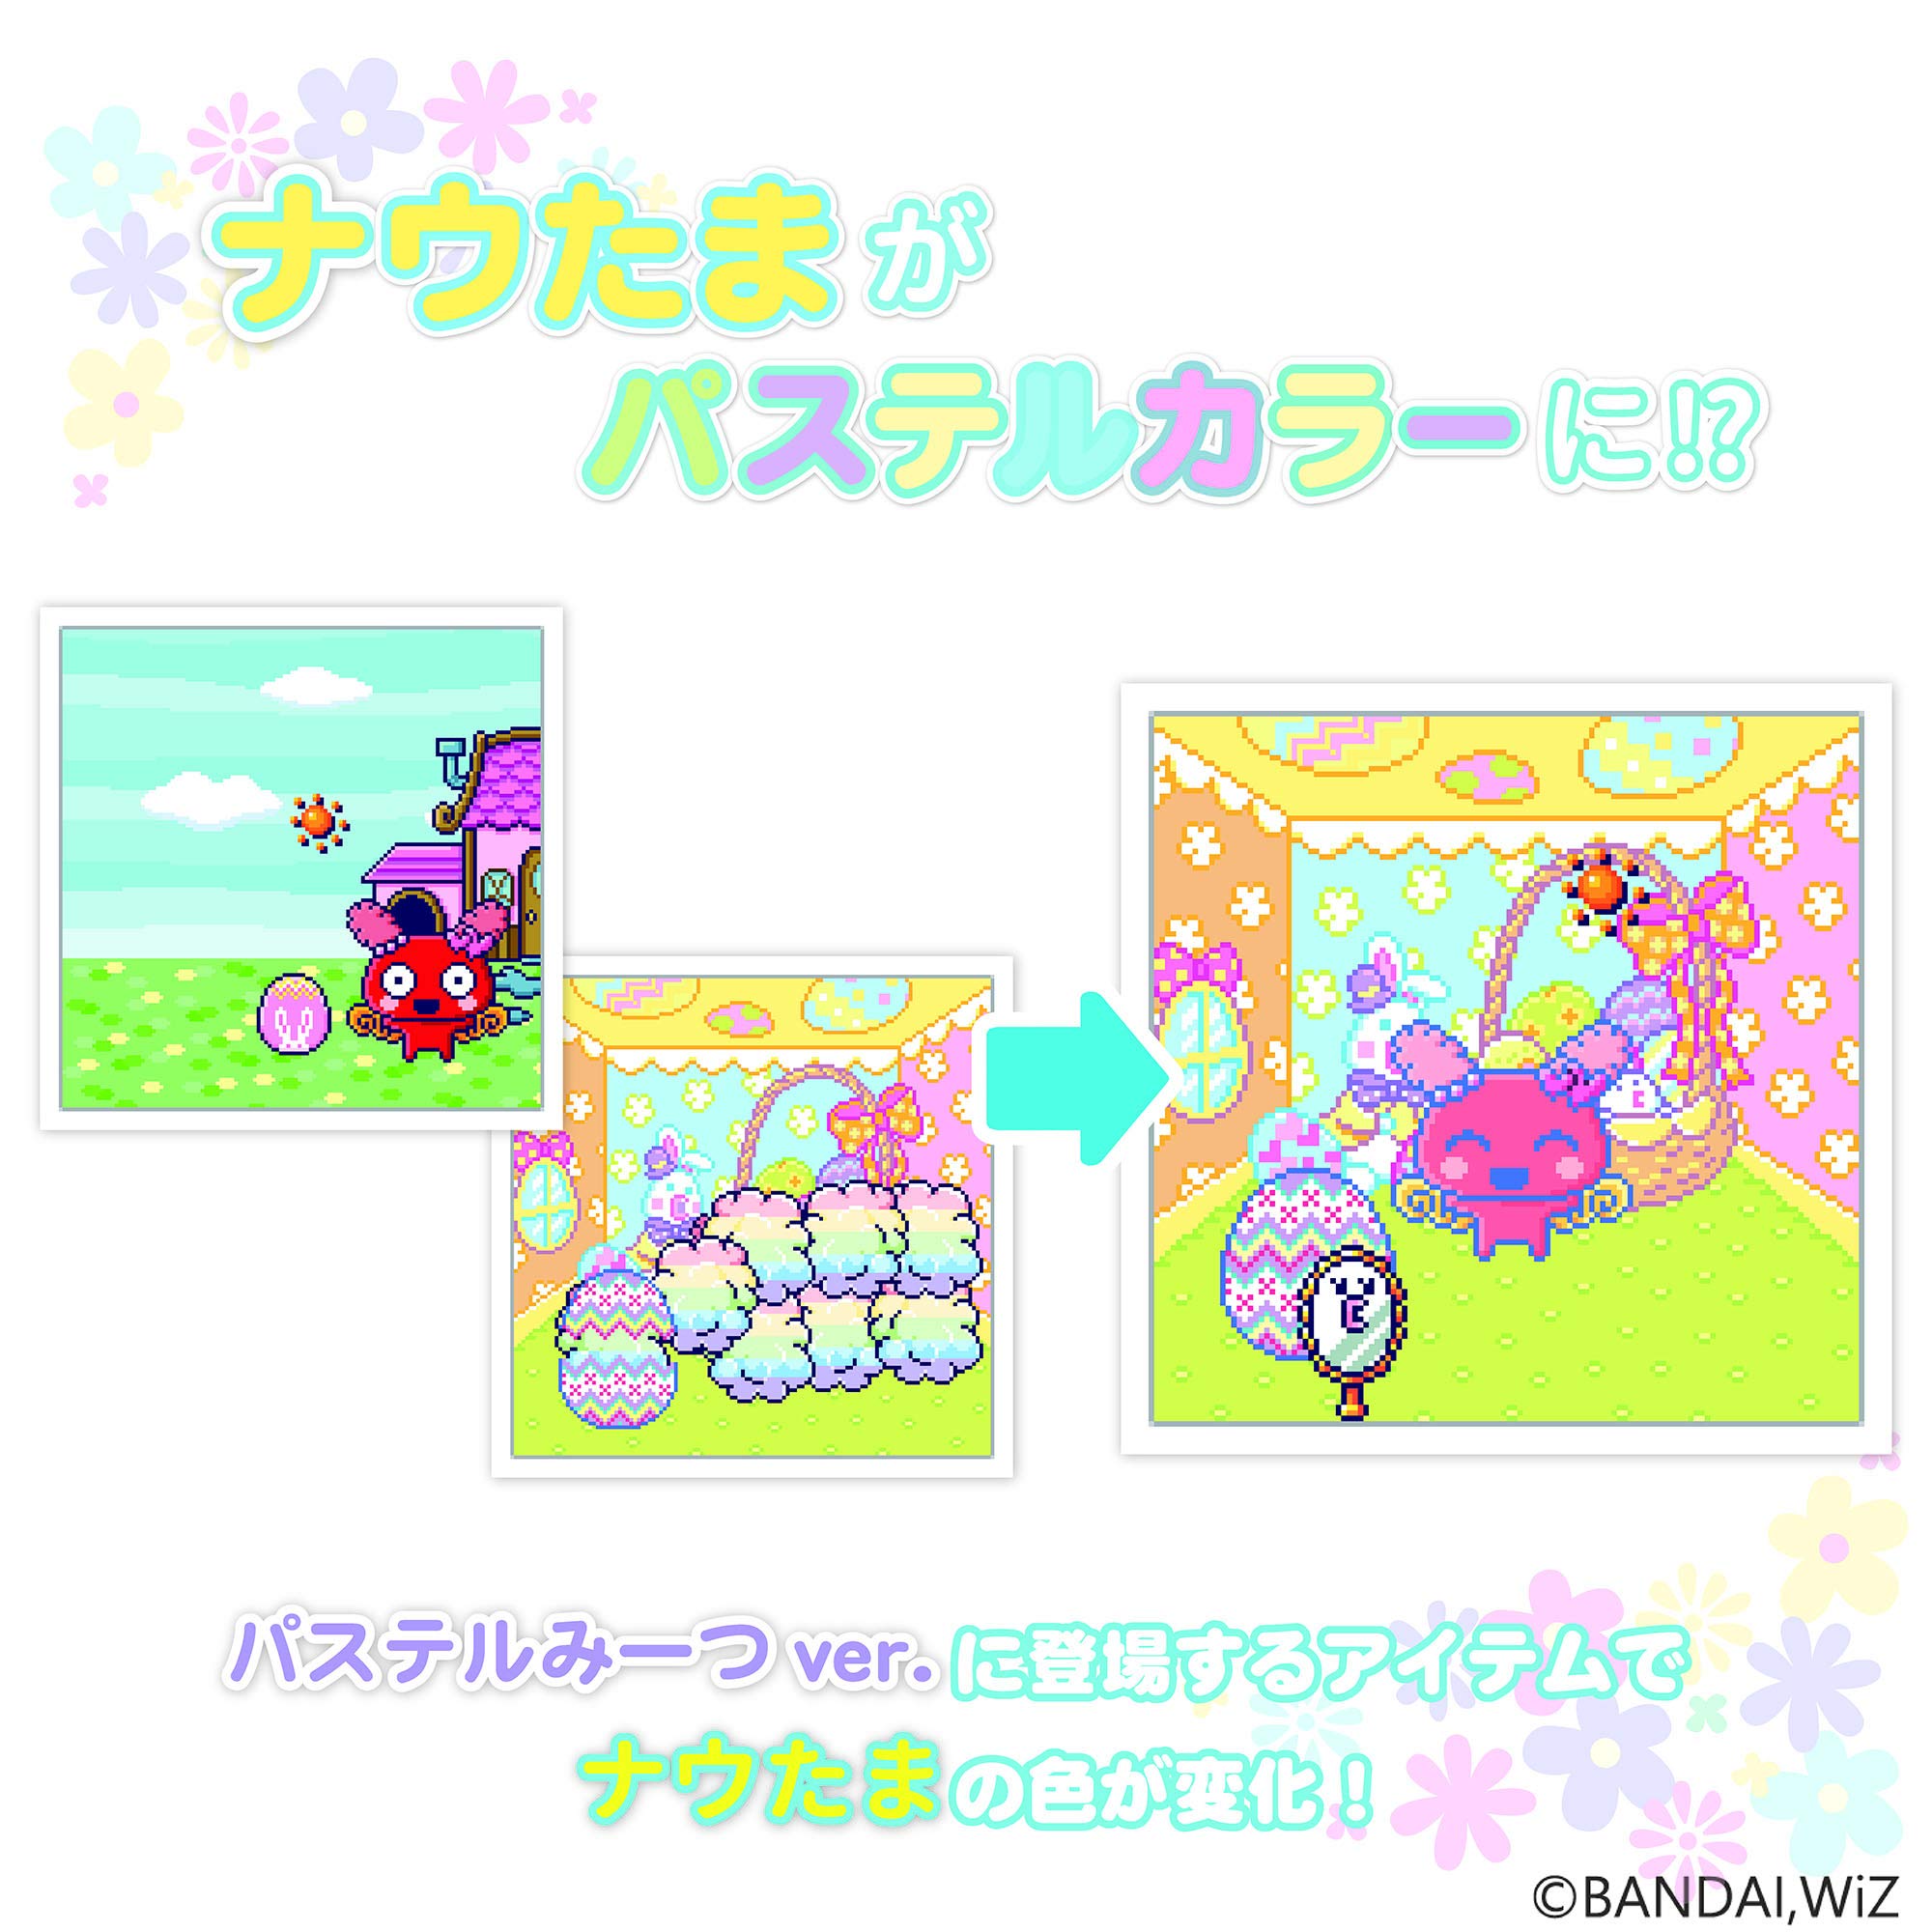 バンダイ(BANDAI) Tamagotchi Meets Pastel Meets ver. Purple Japan Tamagotch